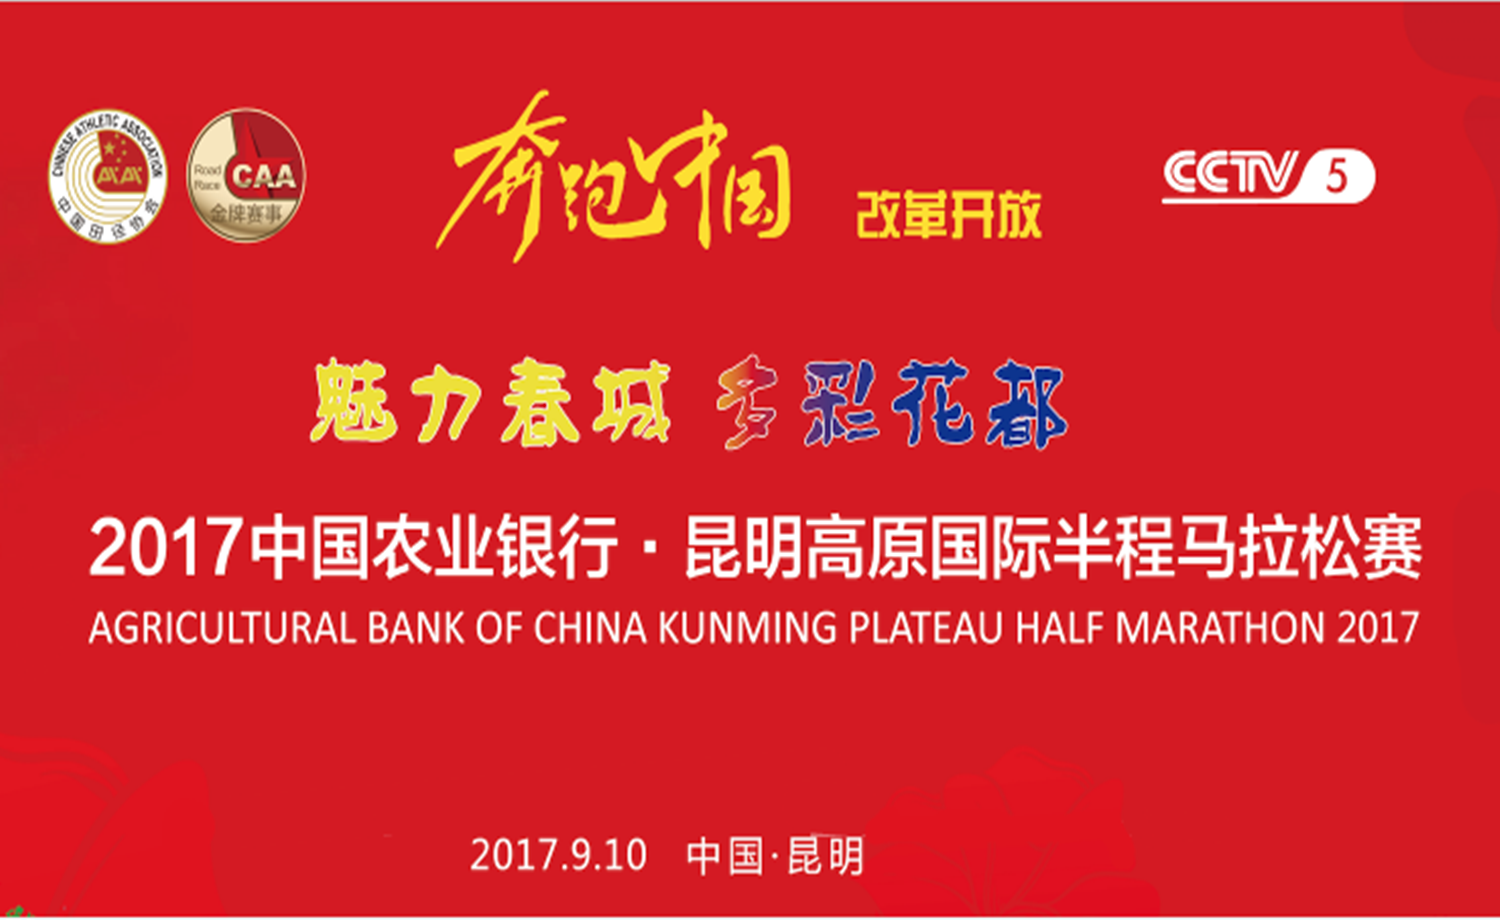 2017中国农业银行昆明高原国际半程马拉松赛